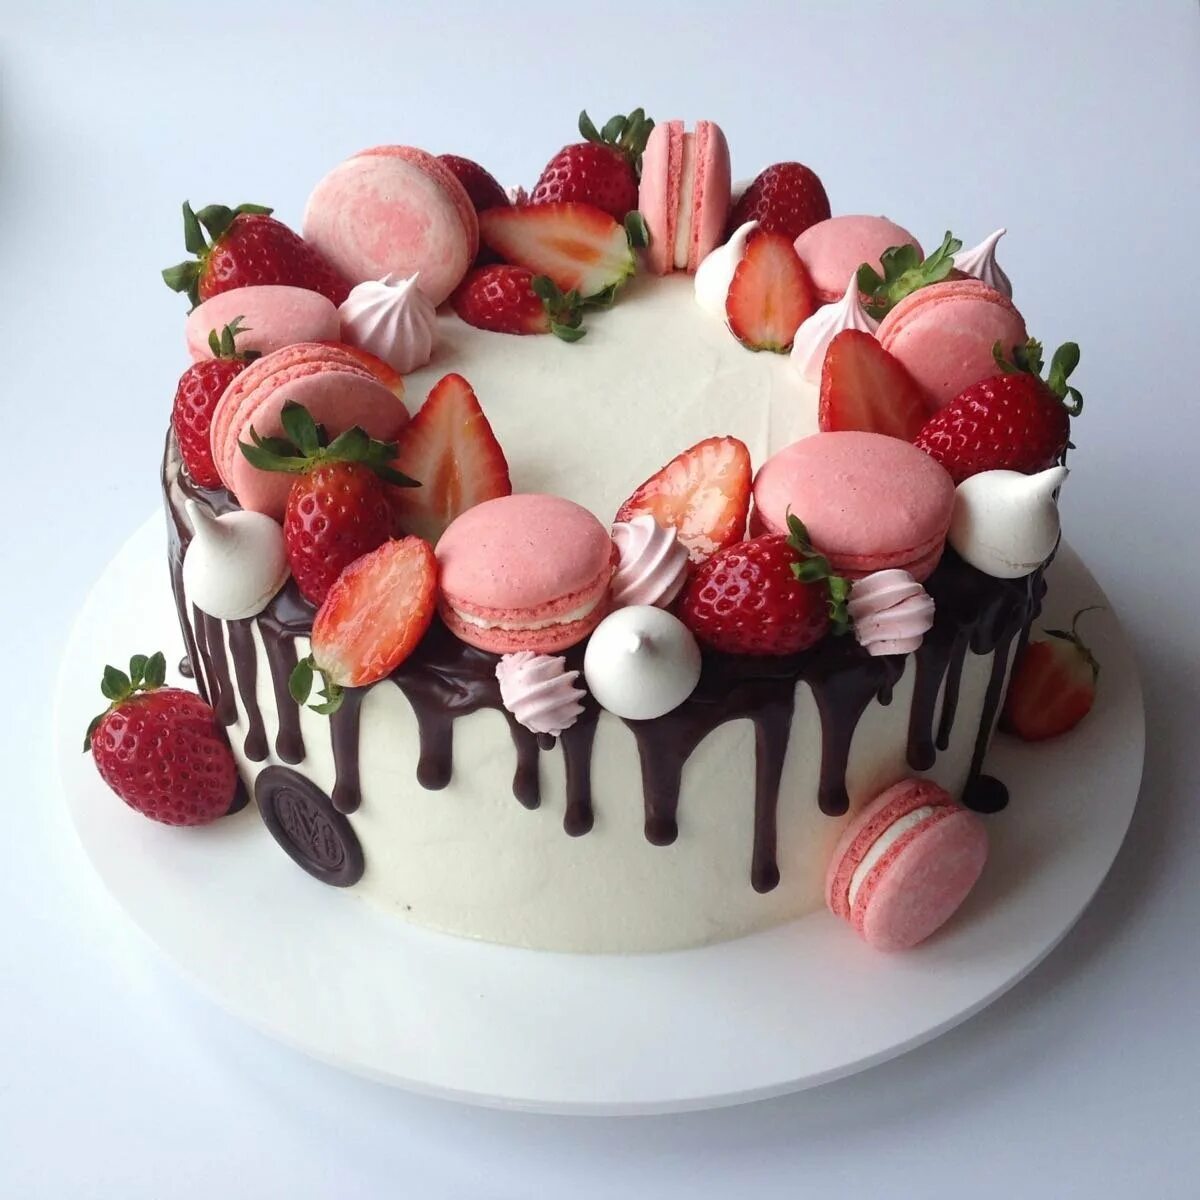 Как украсить торт девушке. Украшение торта. Красивые тортики. Торт с макаронс и ягодами. Украшение торта ягодами.